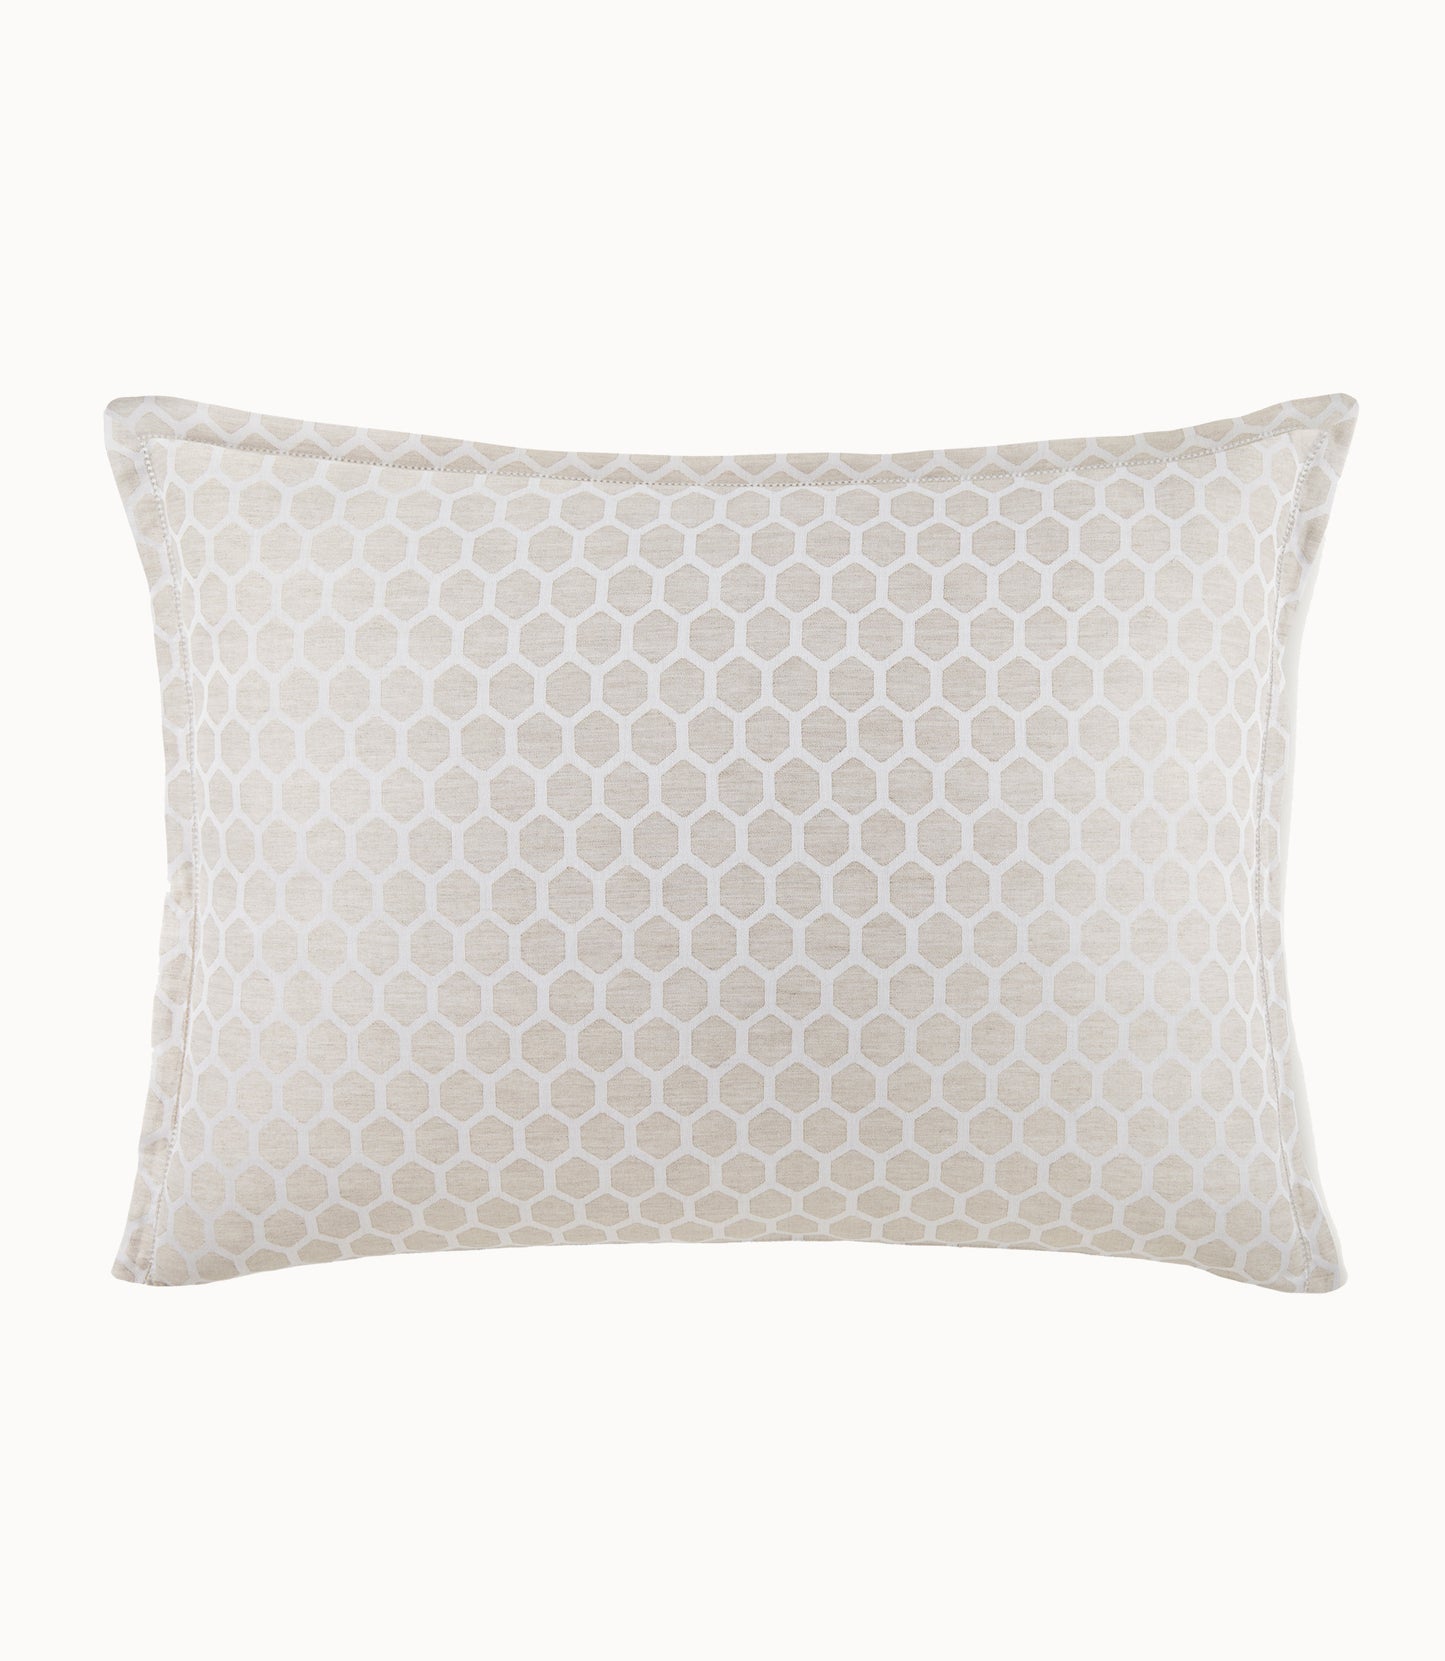 honeycomb patterned pillow sham Linen